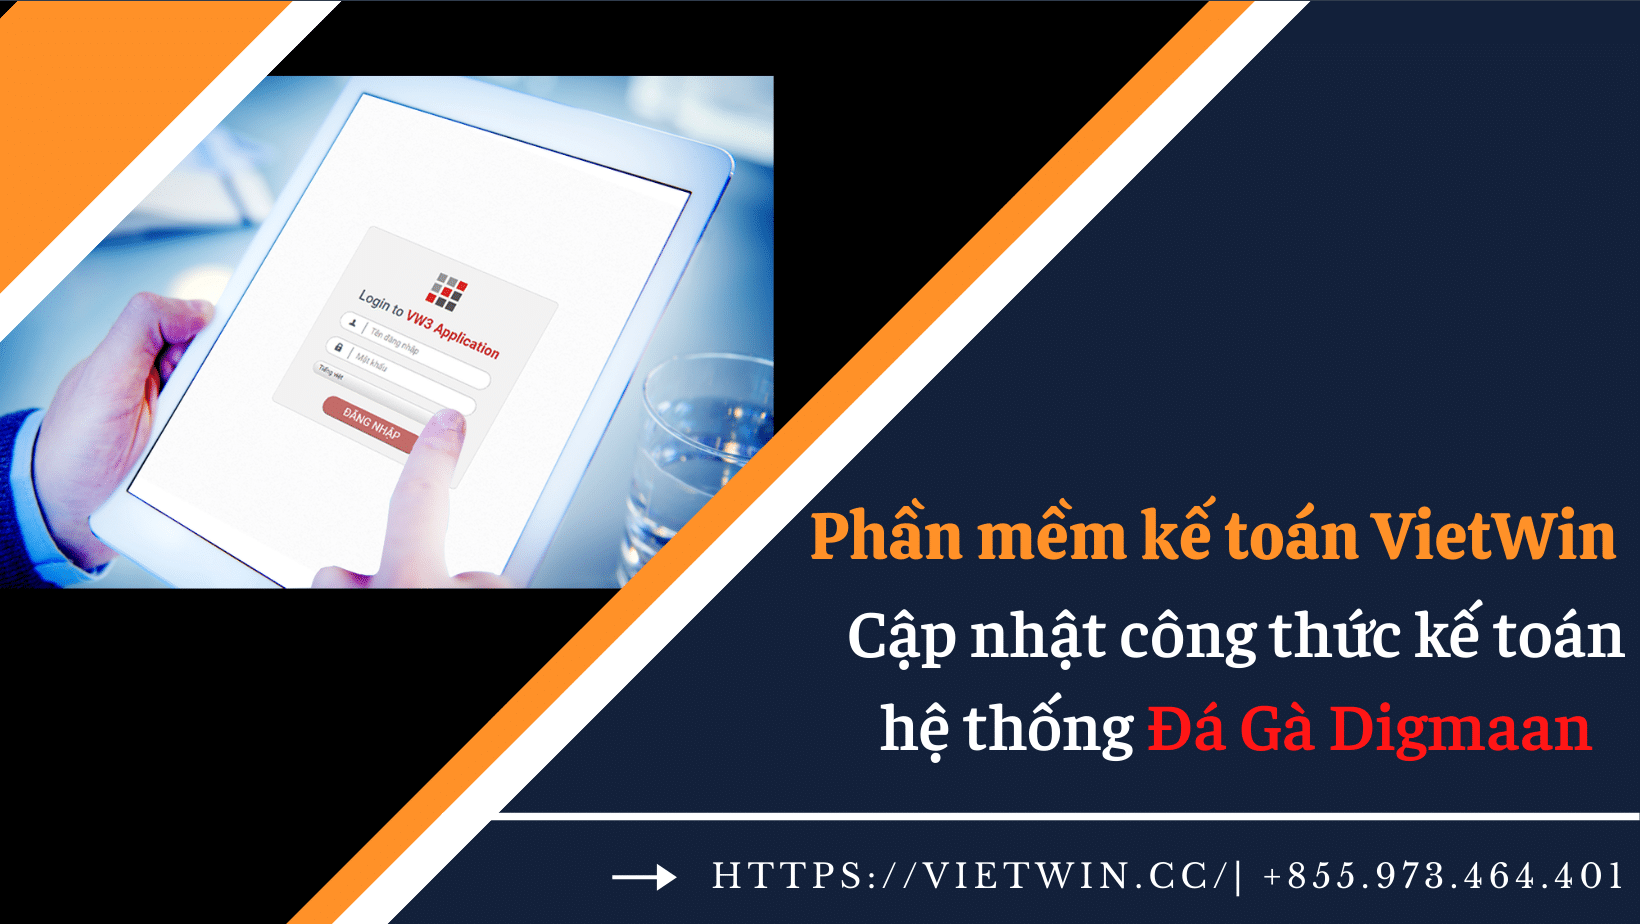 Vietwin cập nhật công thức hệ thống gà Digmaan